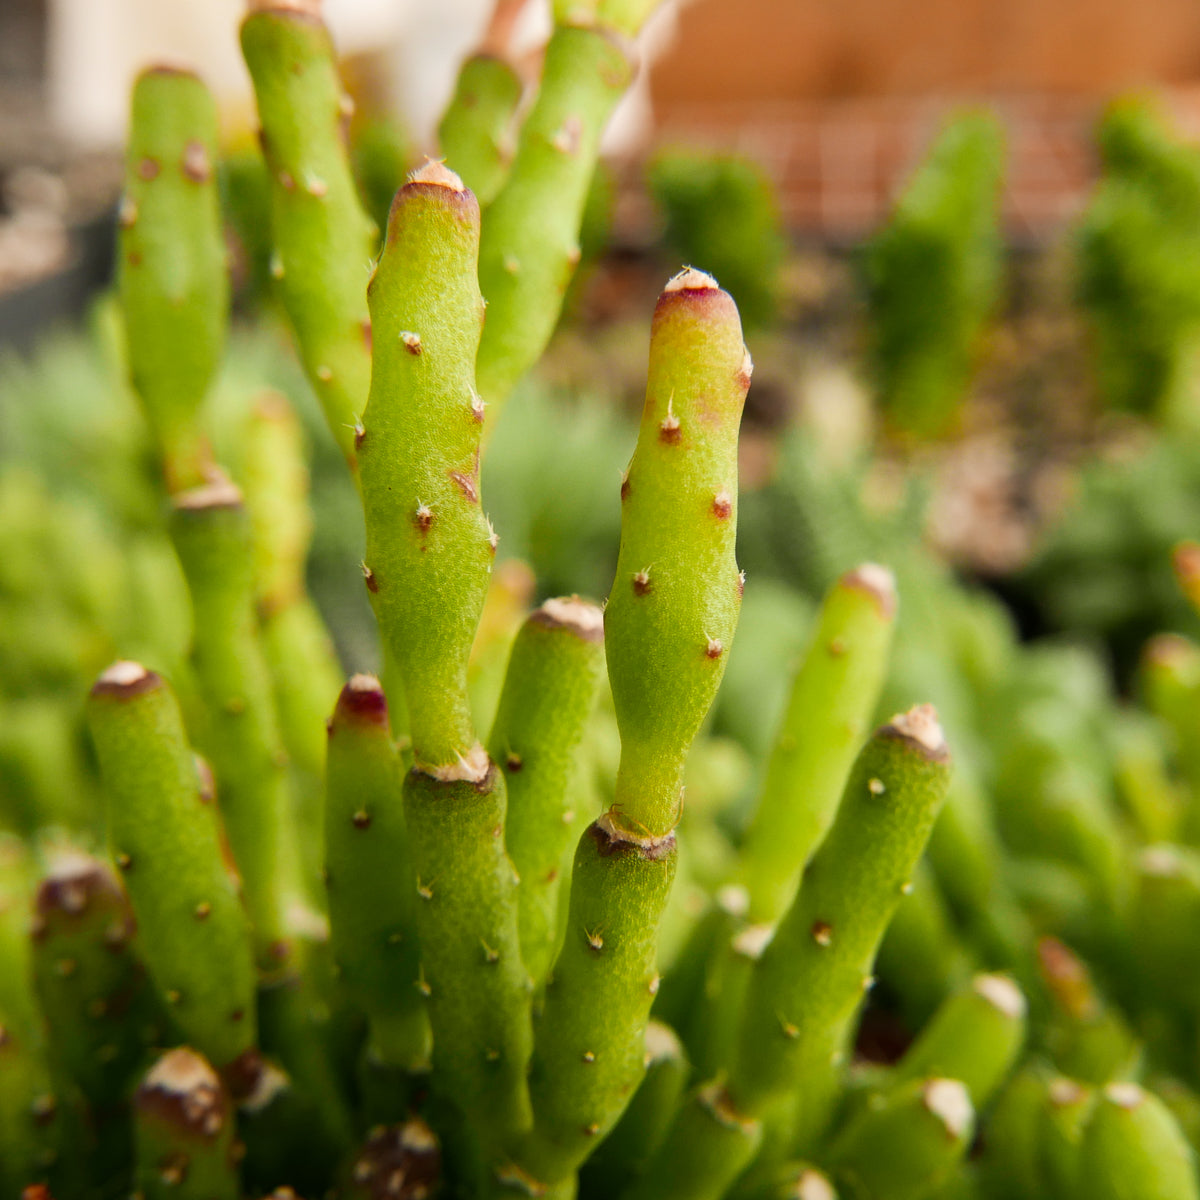 Rhipsalis salicornioides - Dancing Bones Cactus